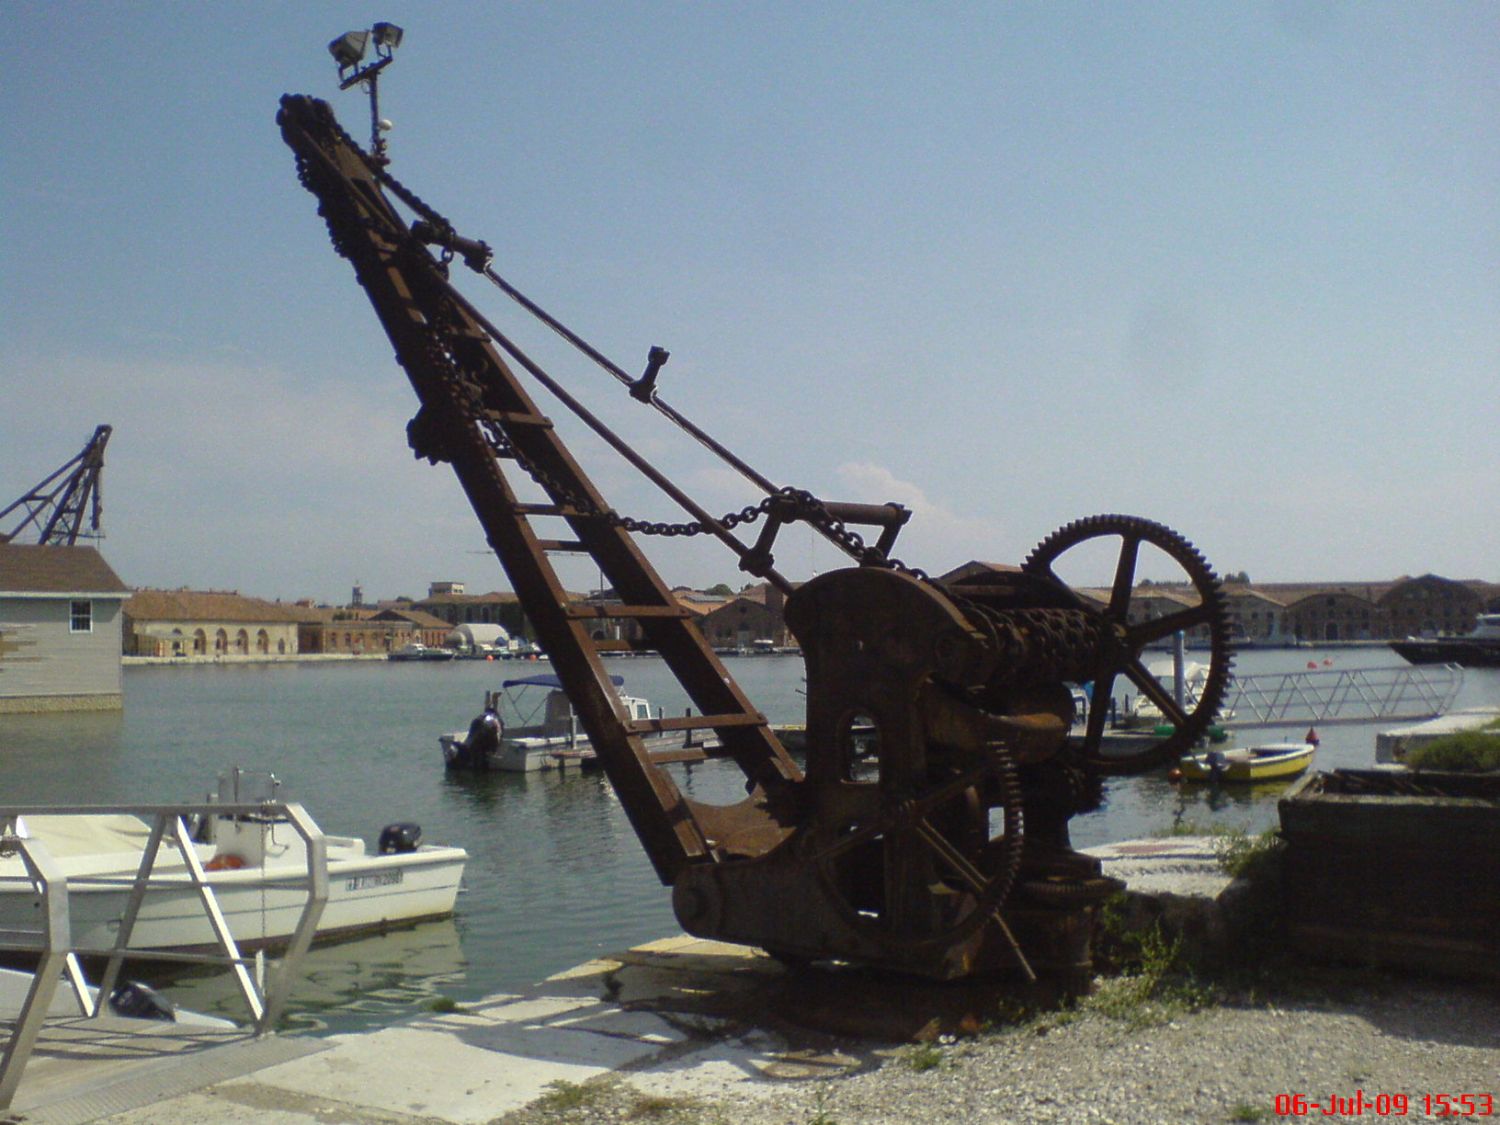 Uferkran Arsenale Venezia